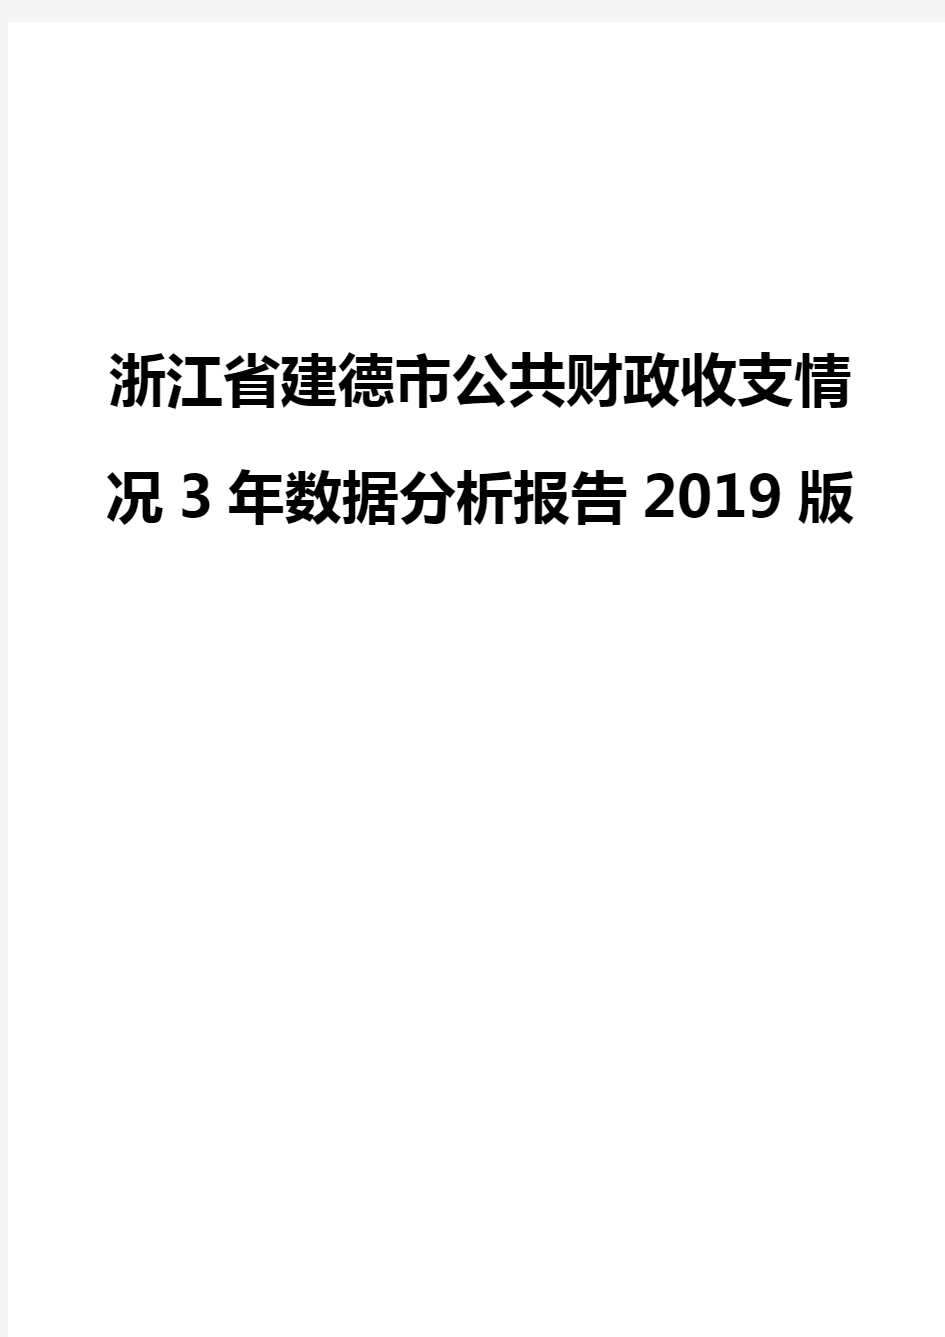 浙江省建德市公共财政收支情况3年数据分析报告2019版